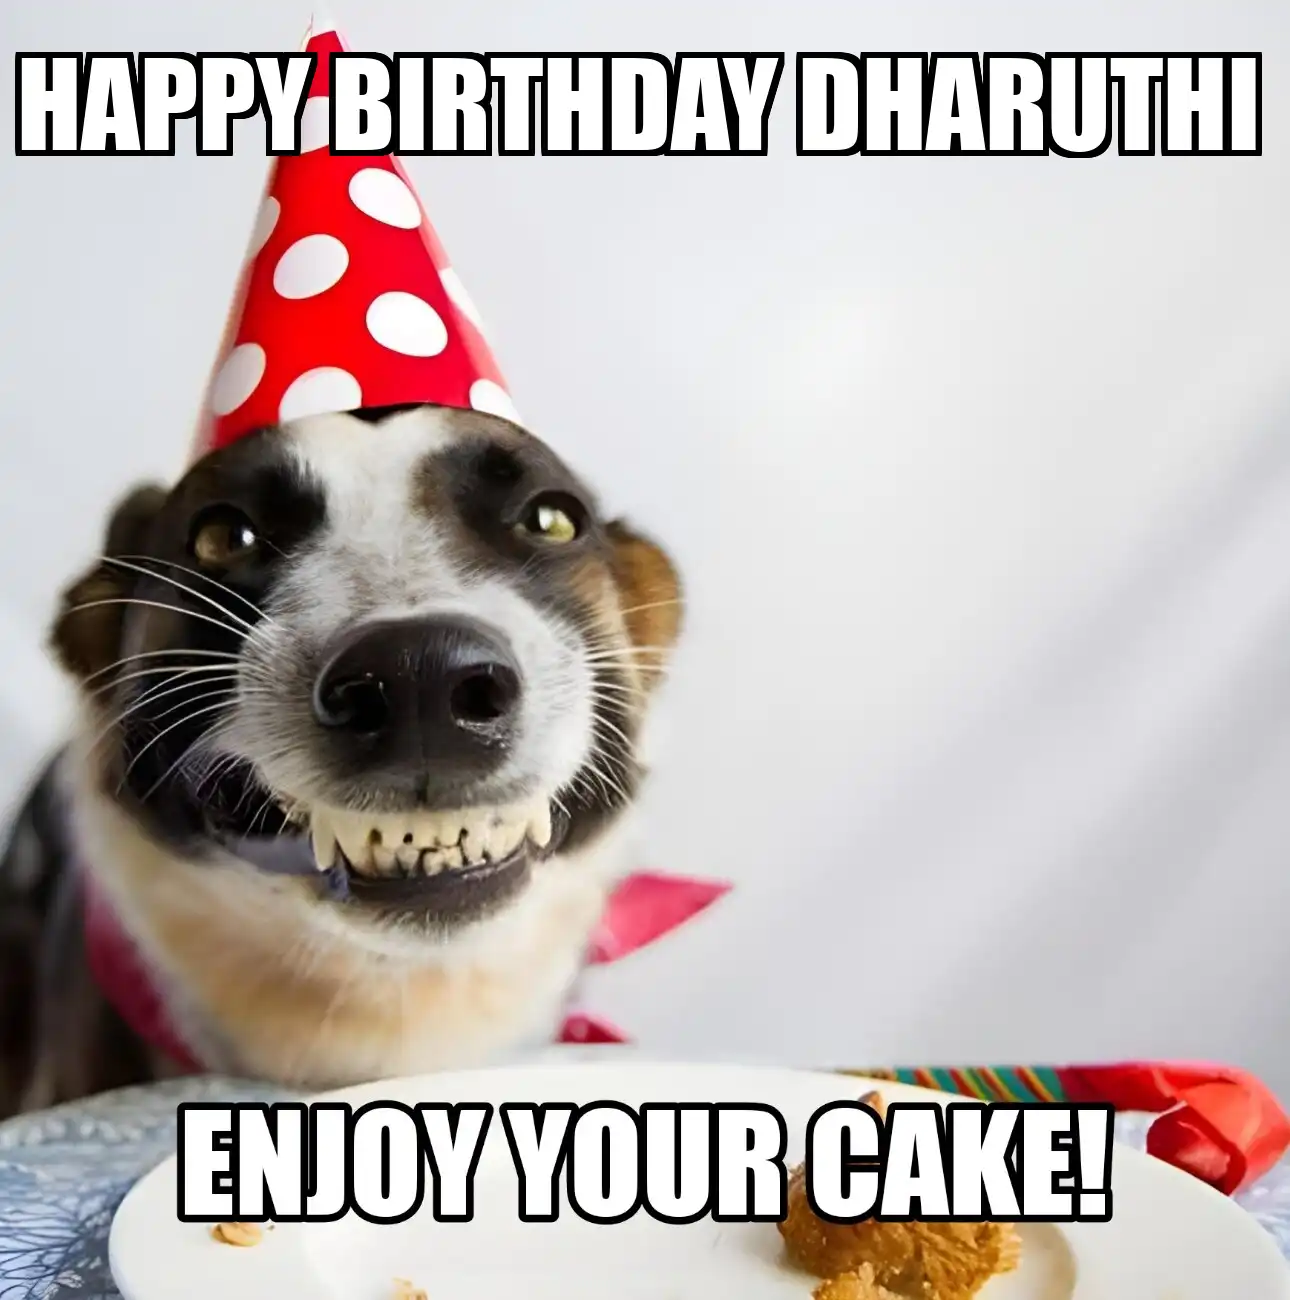 Happy Birthday Dharuthi Enjoy Your Cake Dog Meme